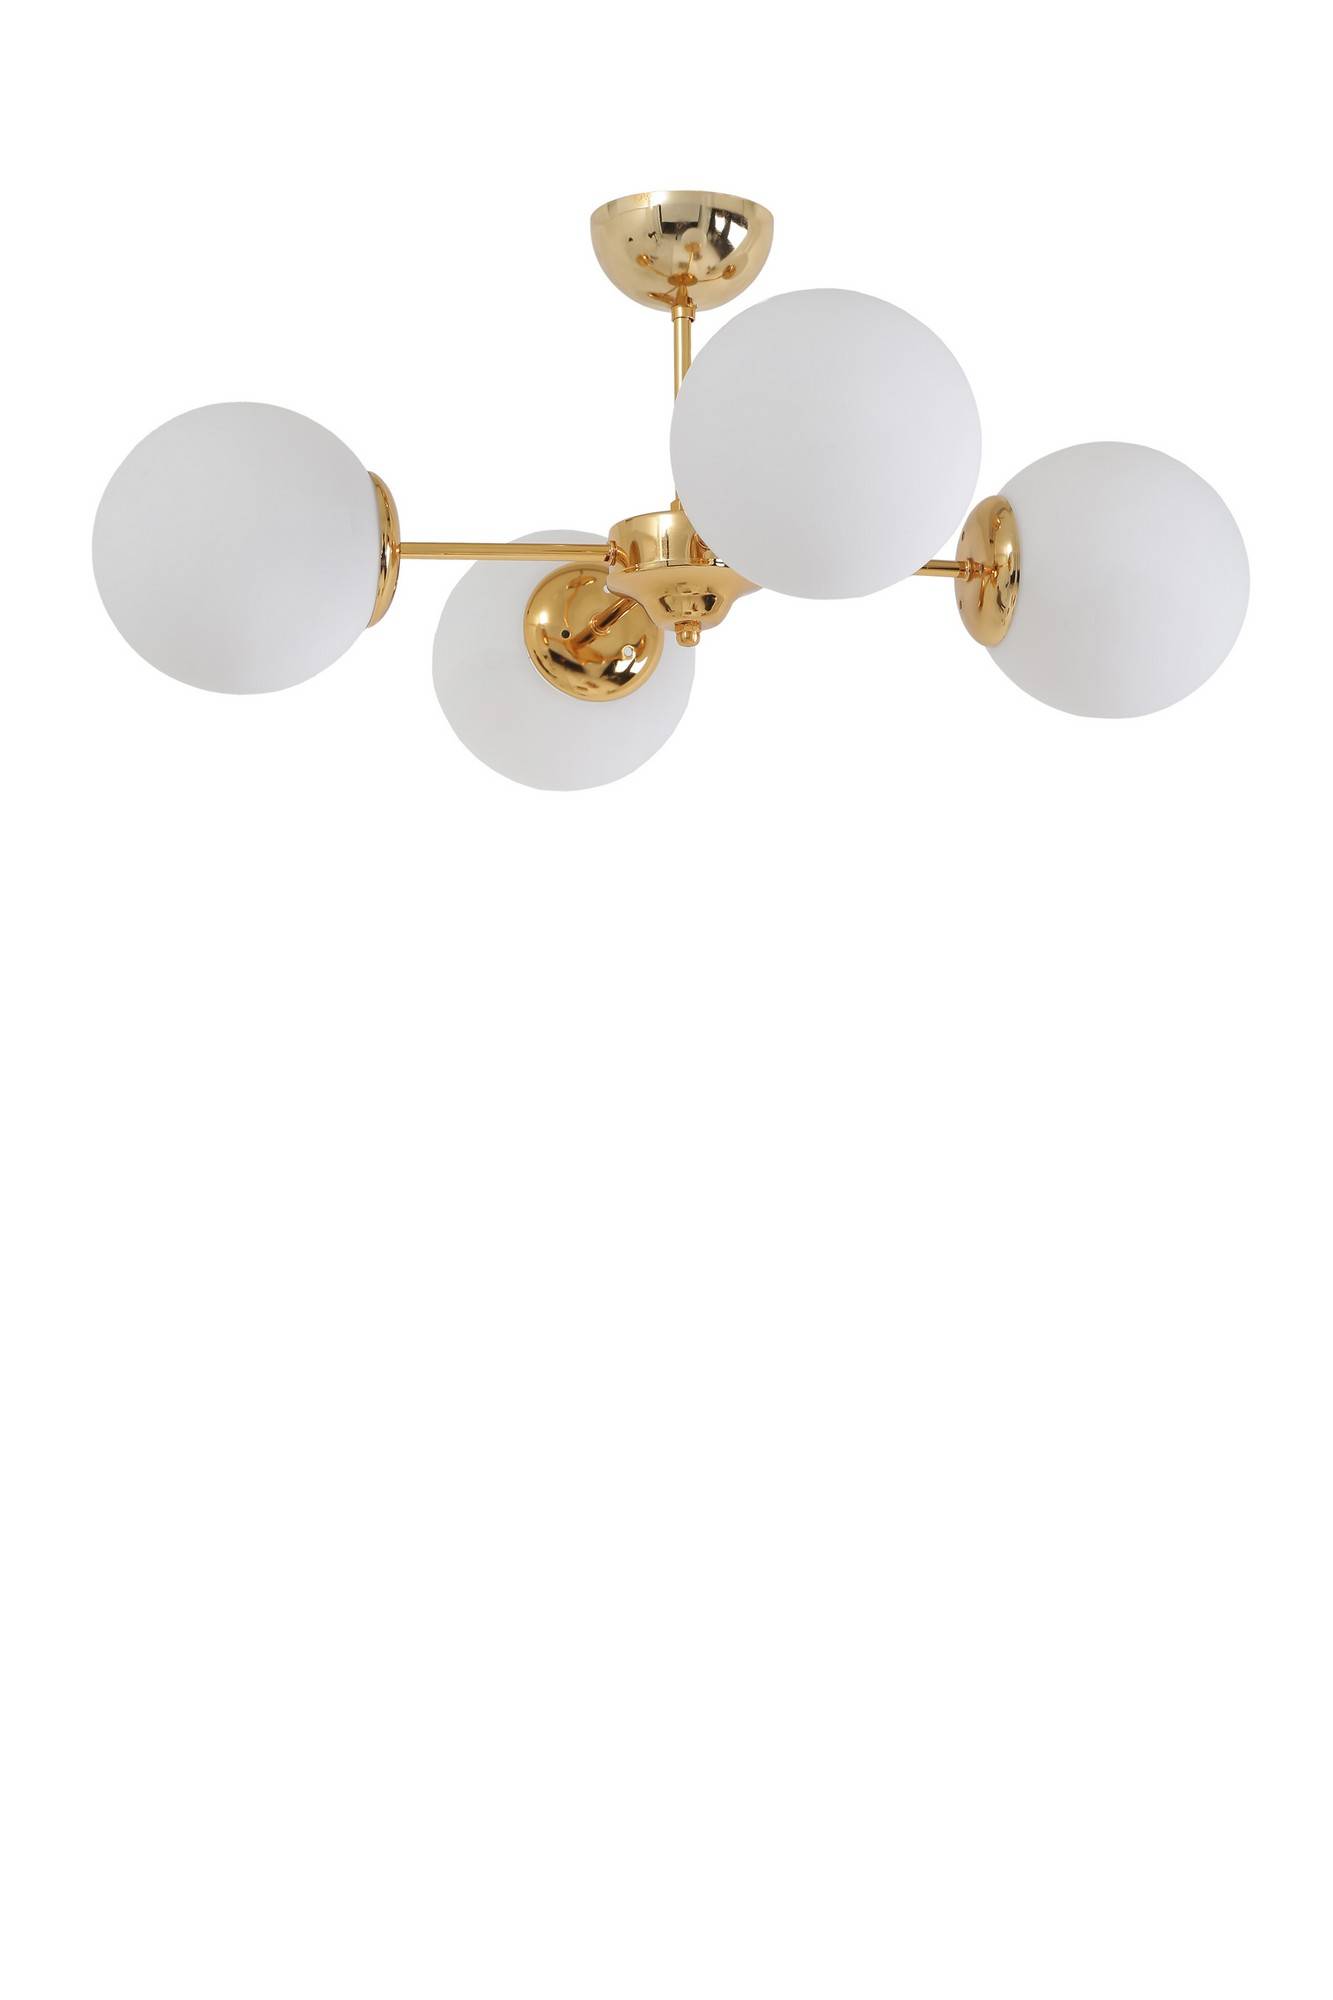 Lámpara Bulla de 4 globos con brazo en estrella Vidrio opaco blanco y metal dorado